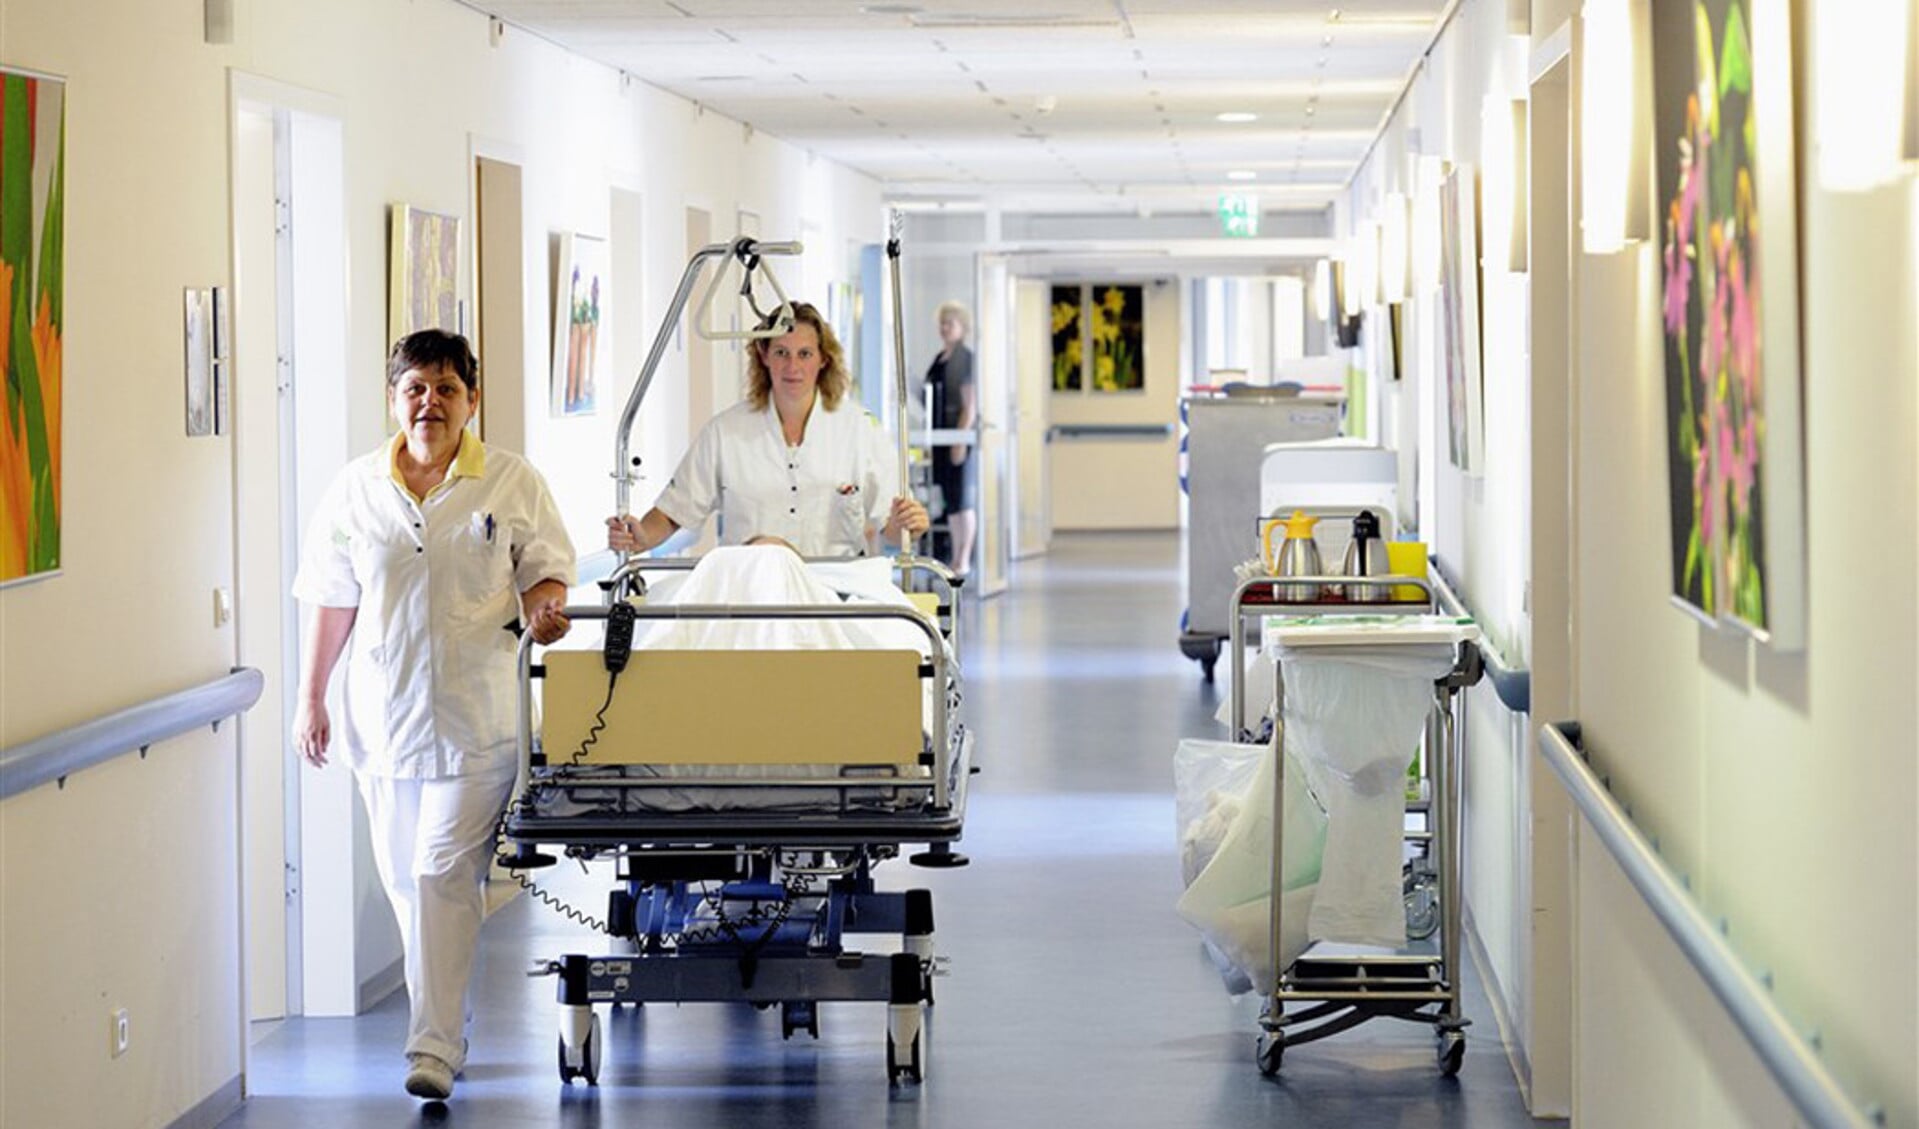 In het Ikazia Ziekenhuis in Rotterdam brengen verpleegkundigen een bedlegerige patiënt terug naar de zaal.